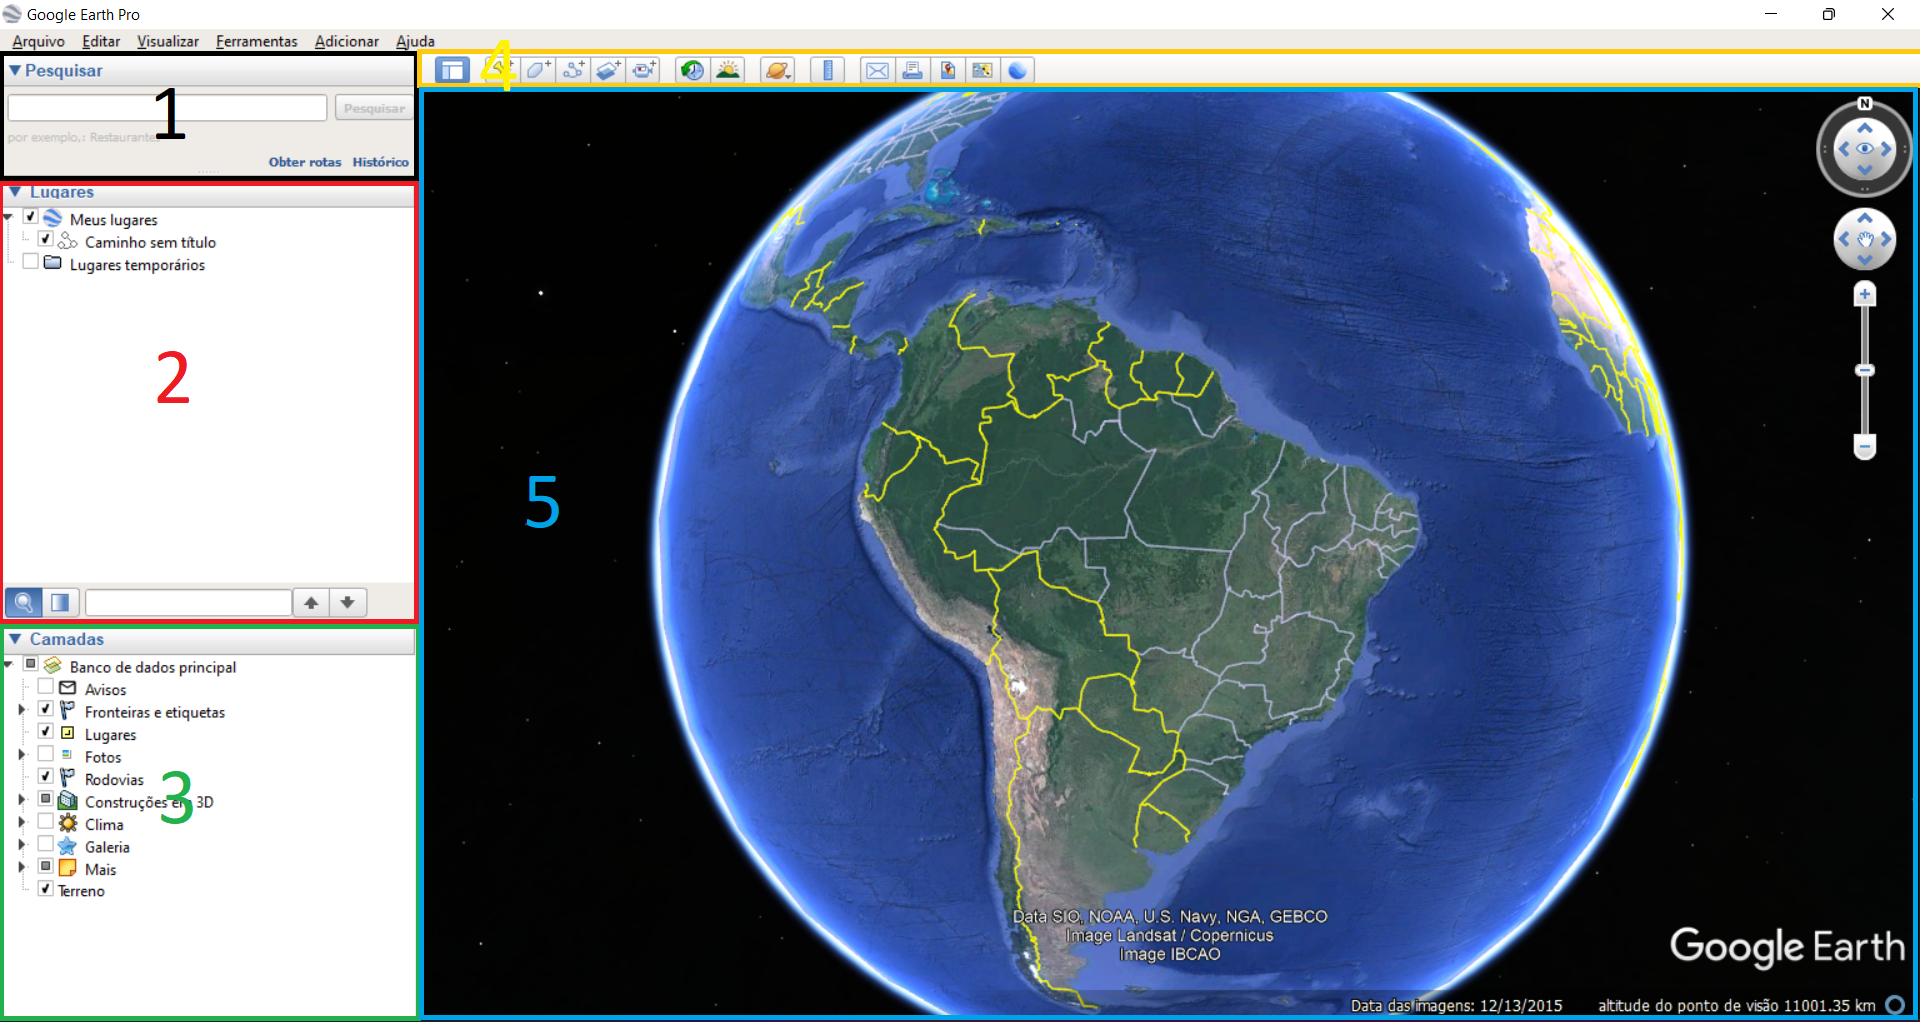 Organização da interface do Google Earth